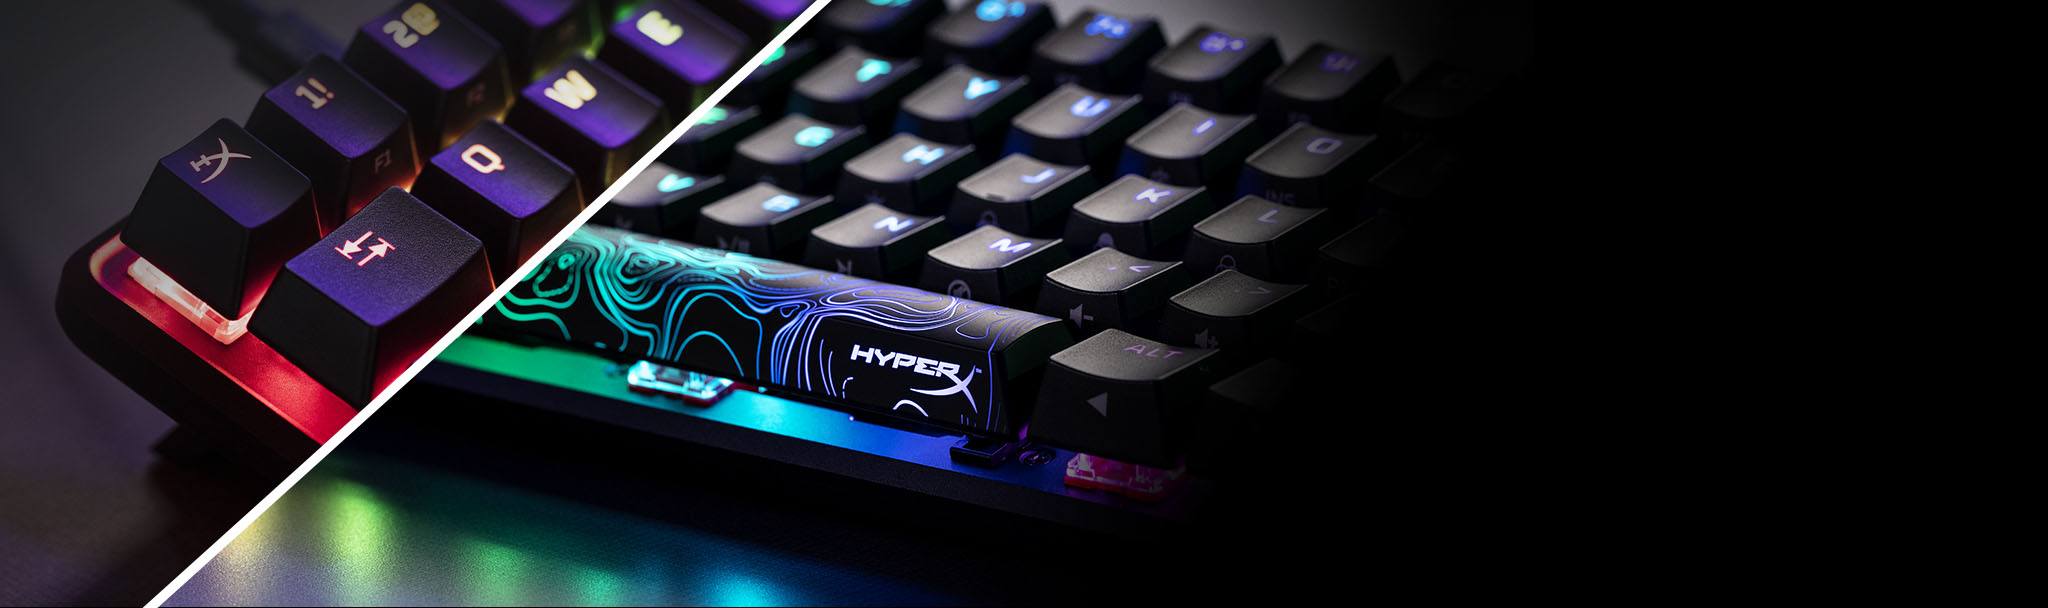 HyperX Alloy Origins - Съемник колпачков и дополнительные клавишные колпачки в комплекте